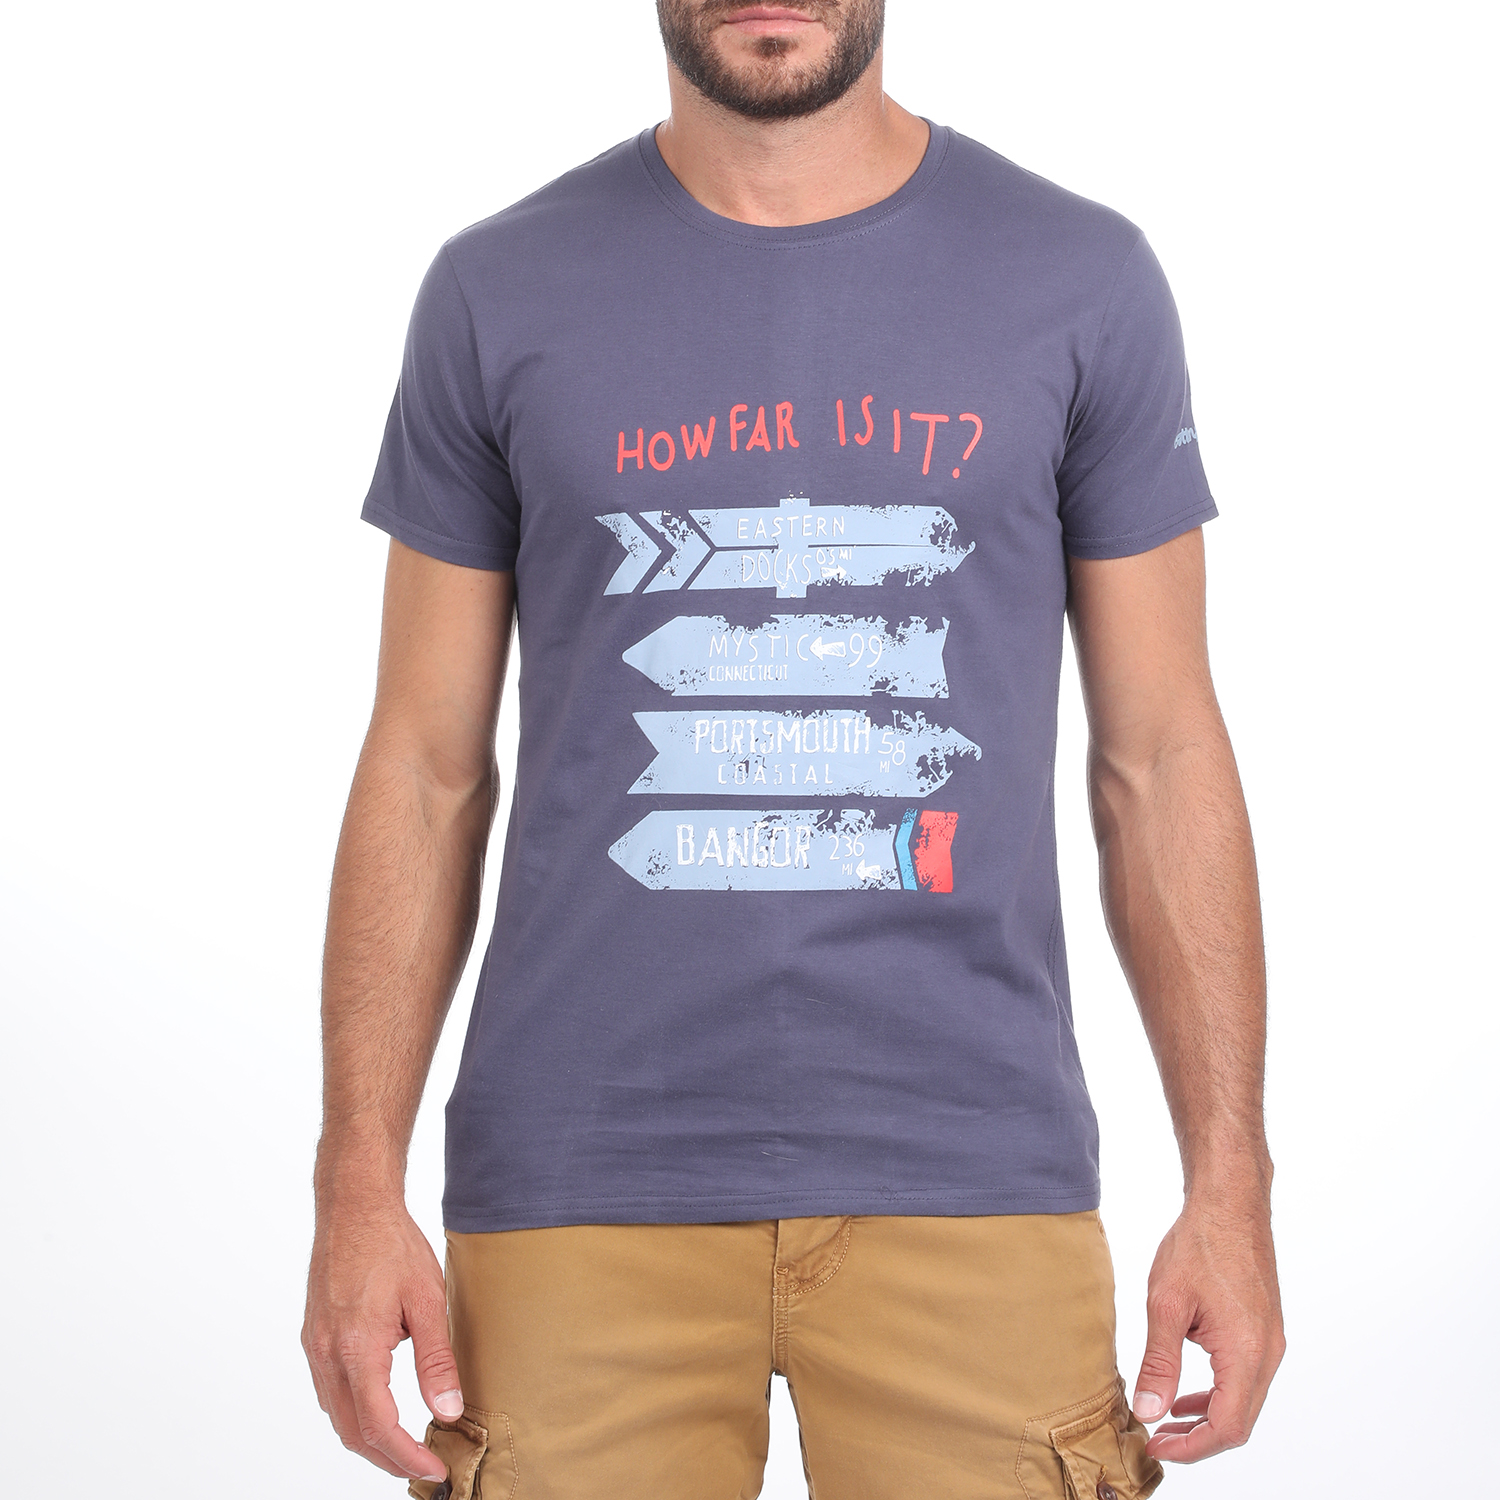 Ανδρικά/Ρούχα/Μπλούζες/Κοντομάνικες BATTERY - Ανδρικό t-shirt BATTERY μπλε